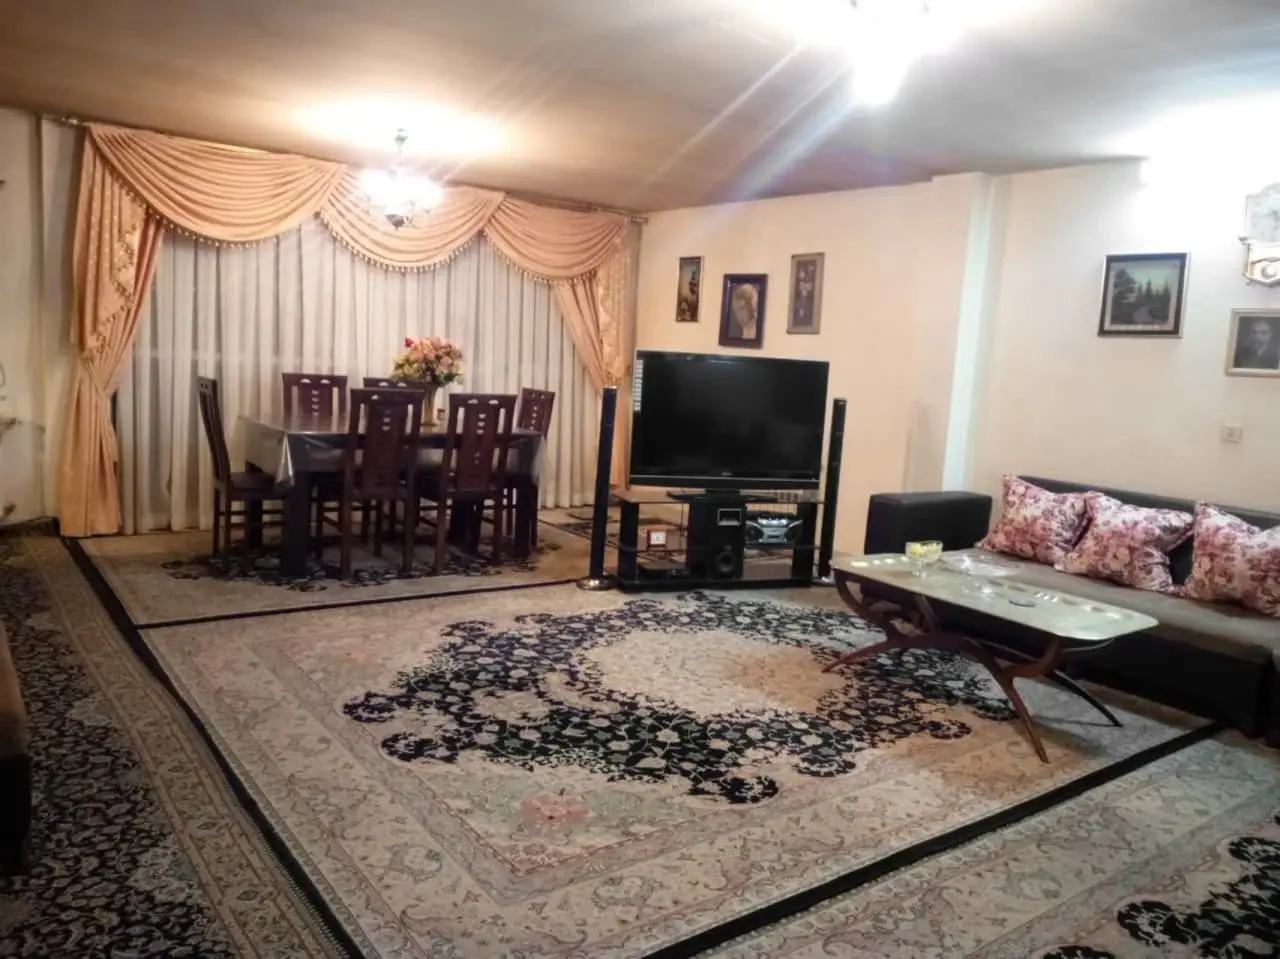  خرید آپارتمان 97 متری دو خواب  میدان بهرود، سعادت آباد